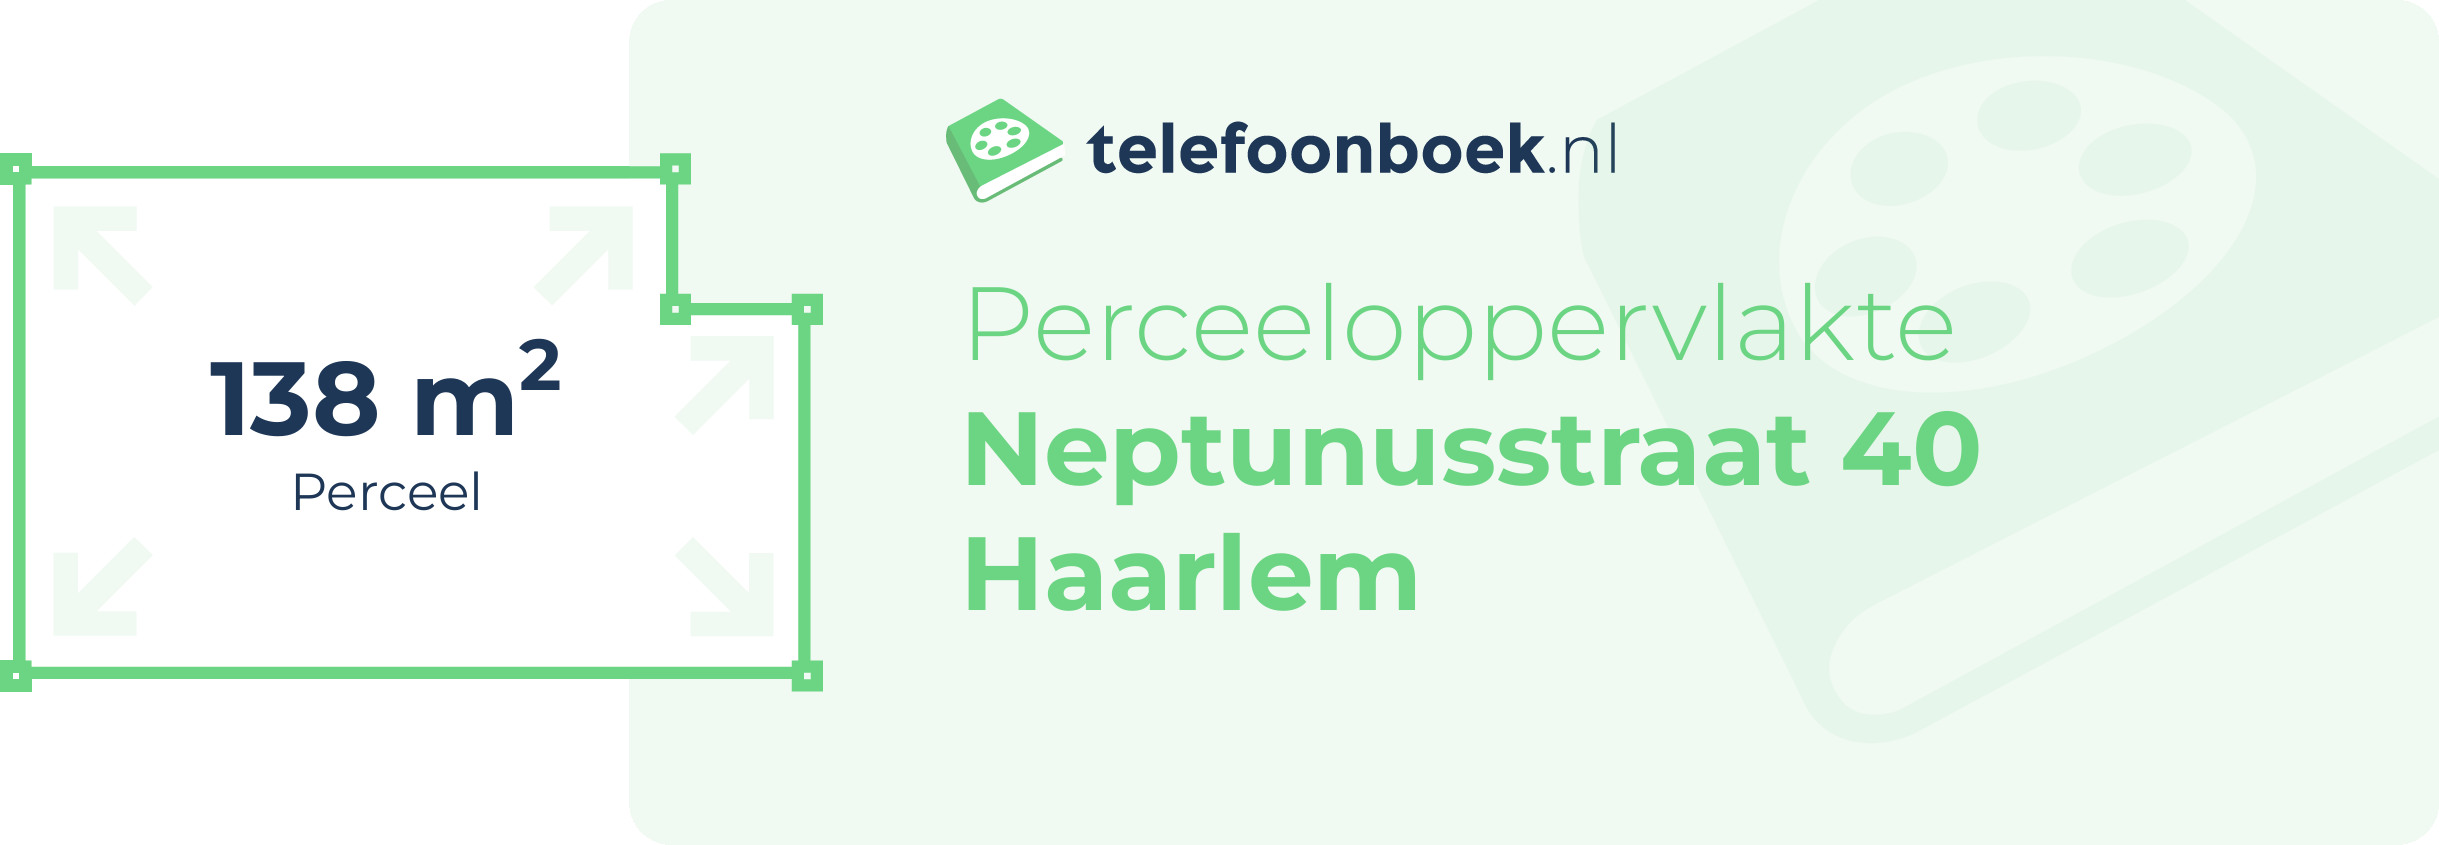 Perceeloppervlakte Neptunusstraat 40 Haarlem